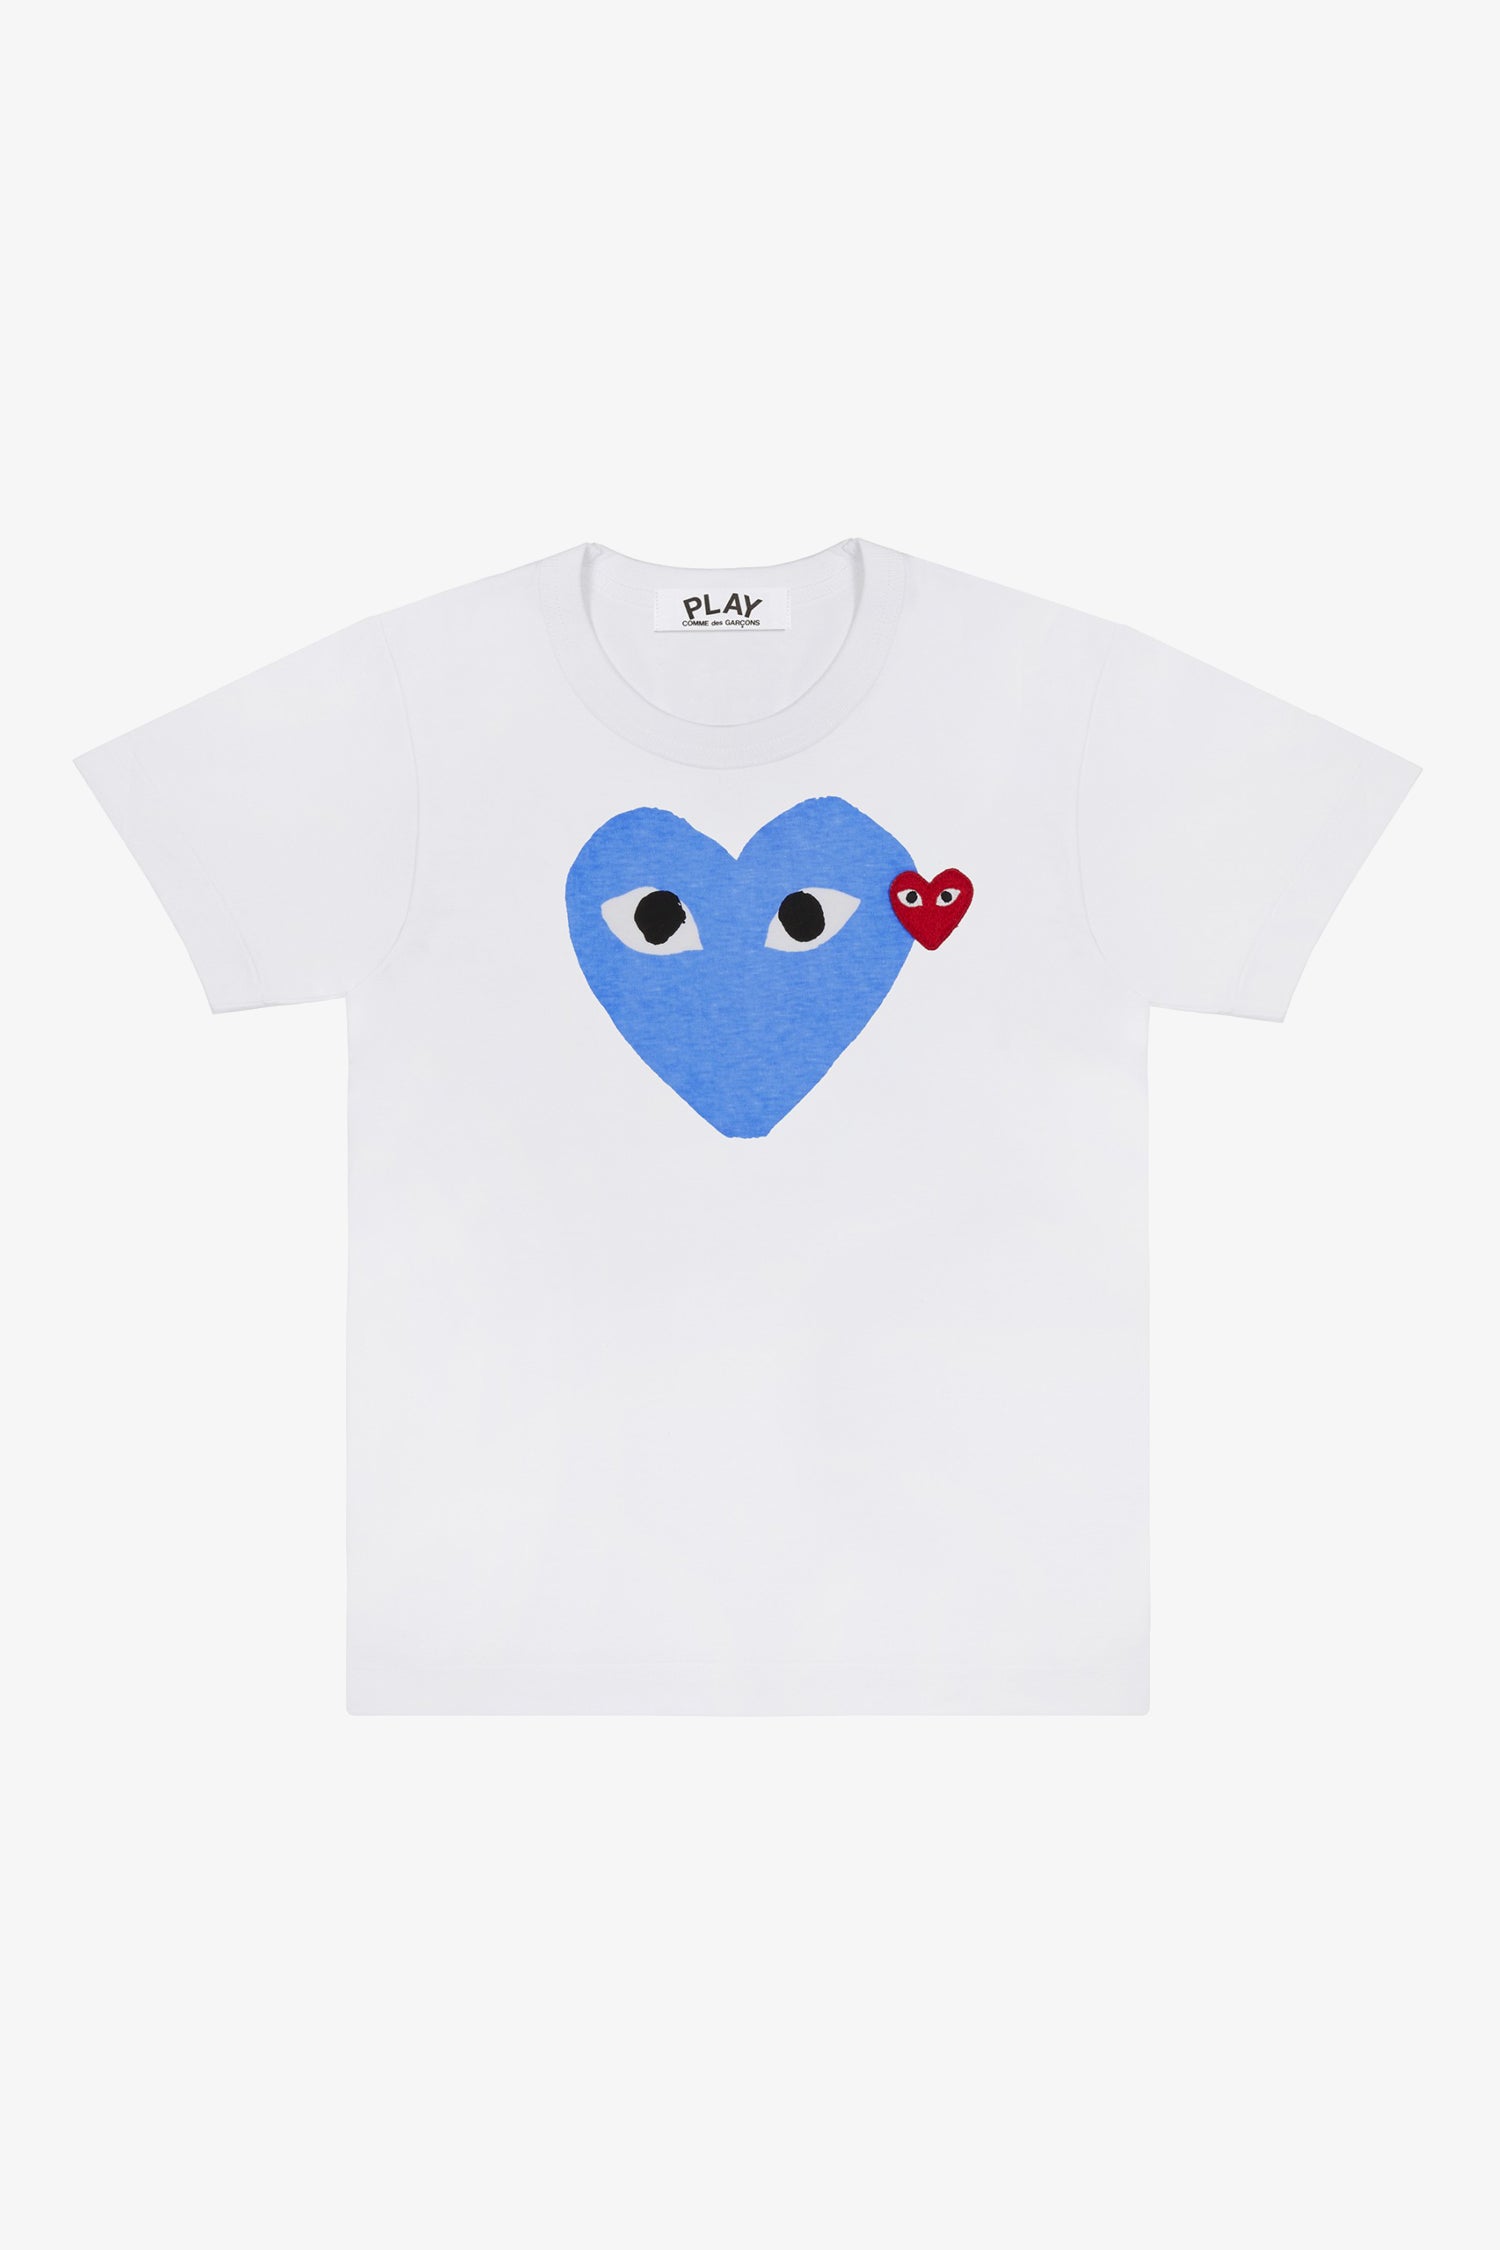 Selectshop FRAME - COMME DES GARCONS PLAY Big Blue Heart T-Shirt T-Shirt Dubai